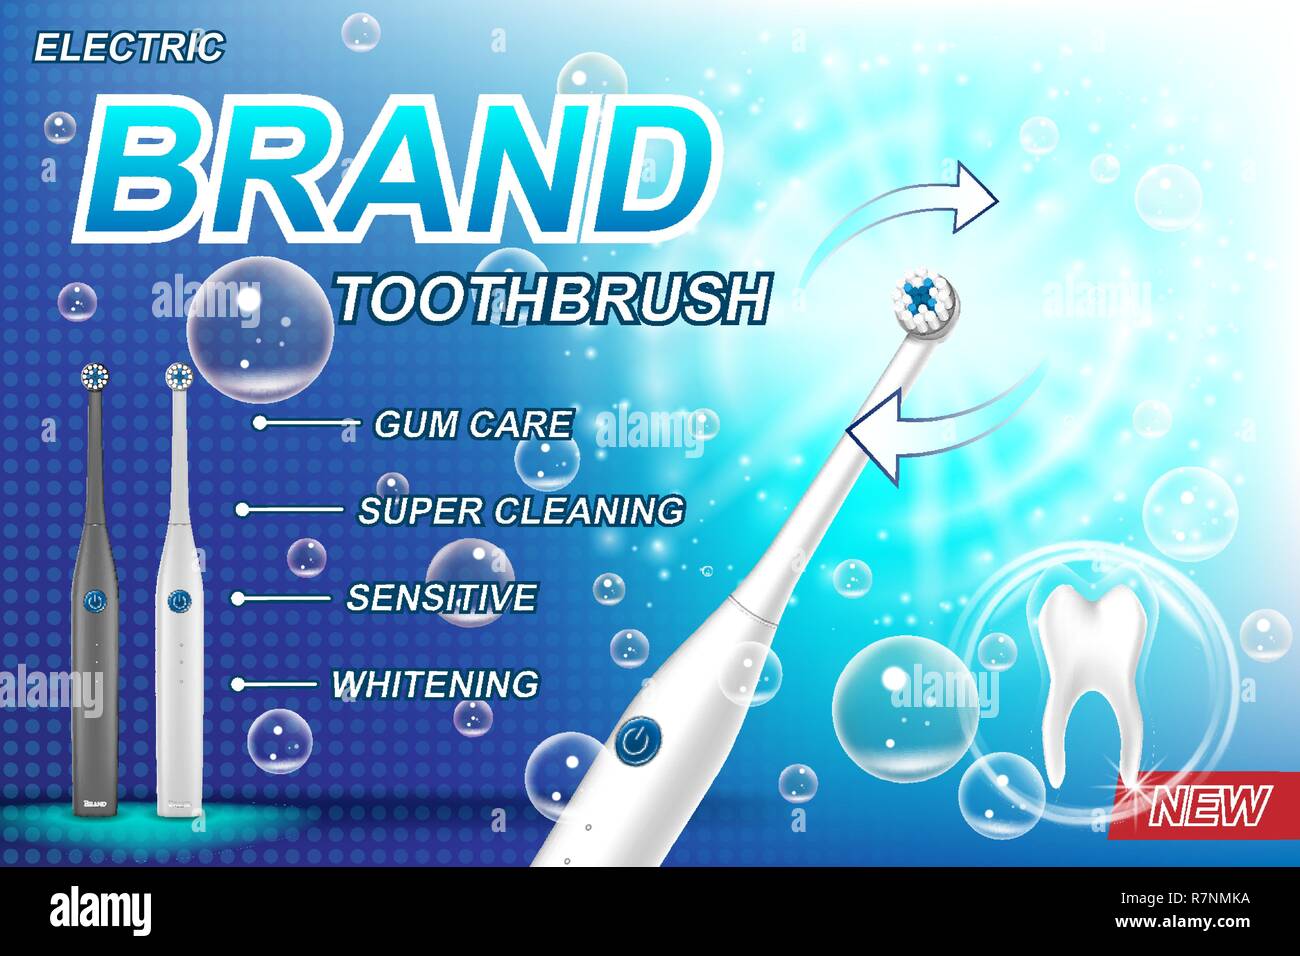 Cepillo dental eléctrico anuncios concepto. Modelo de diente y el paquete del producto diseño de carteles publicitarios y de marketing. Cepillo de dientes vector 3D ilustración. Ilustración del Vector